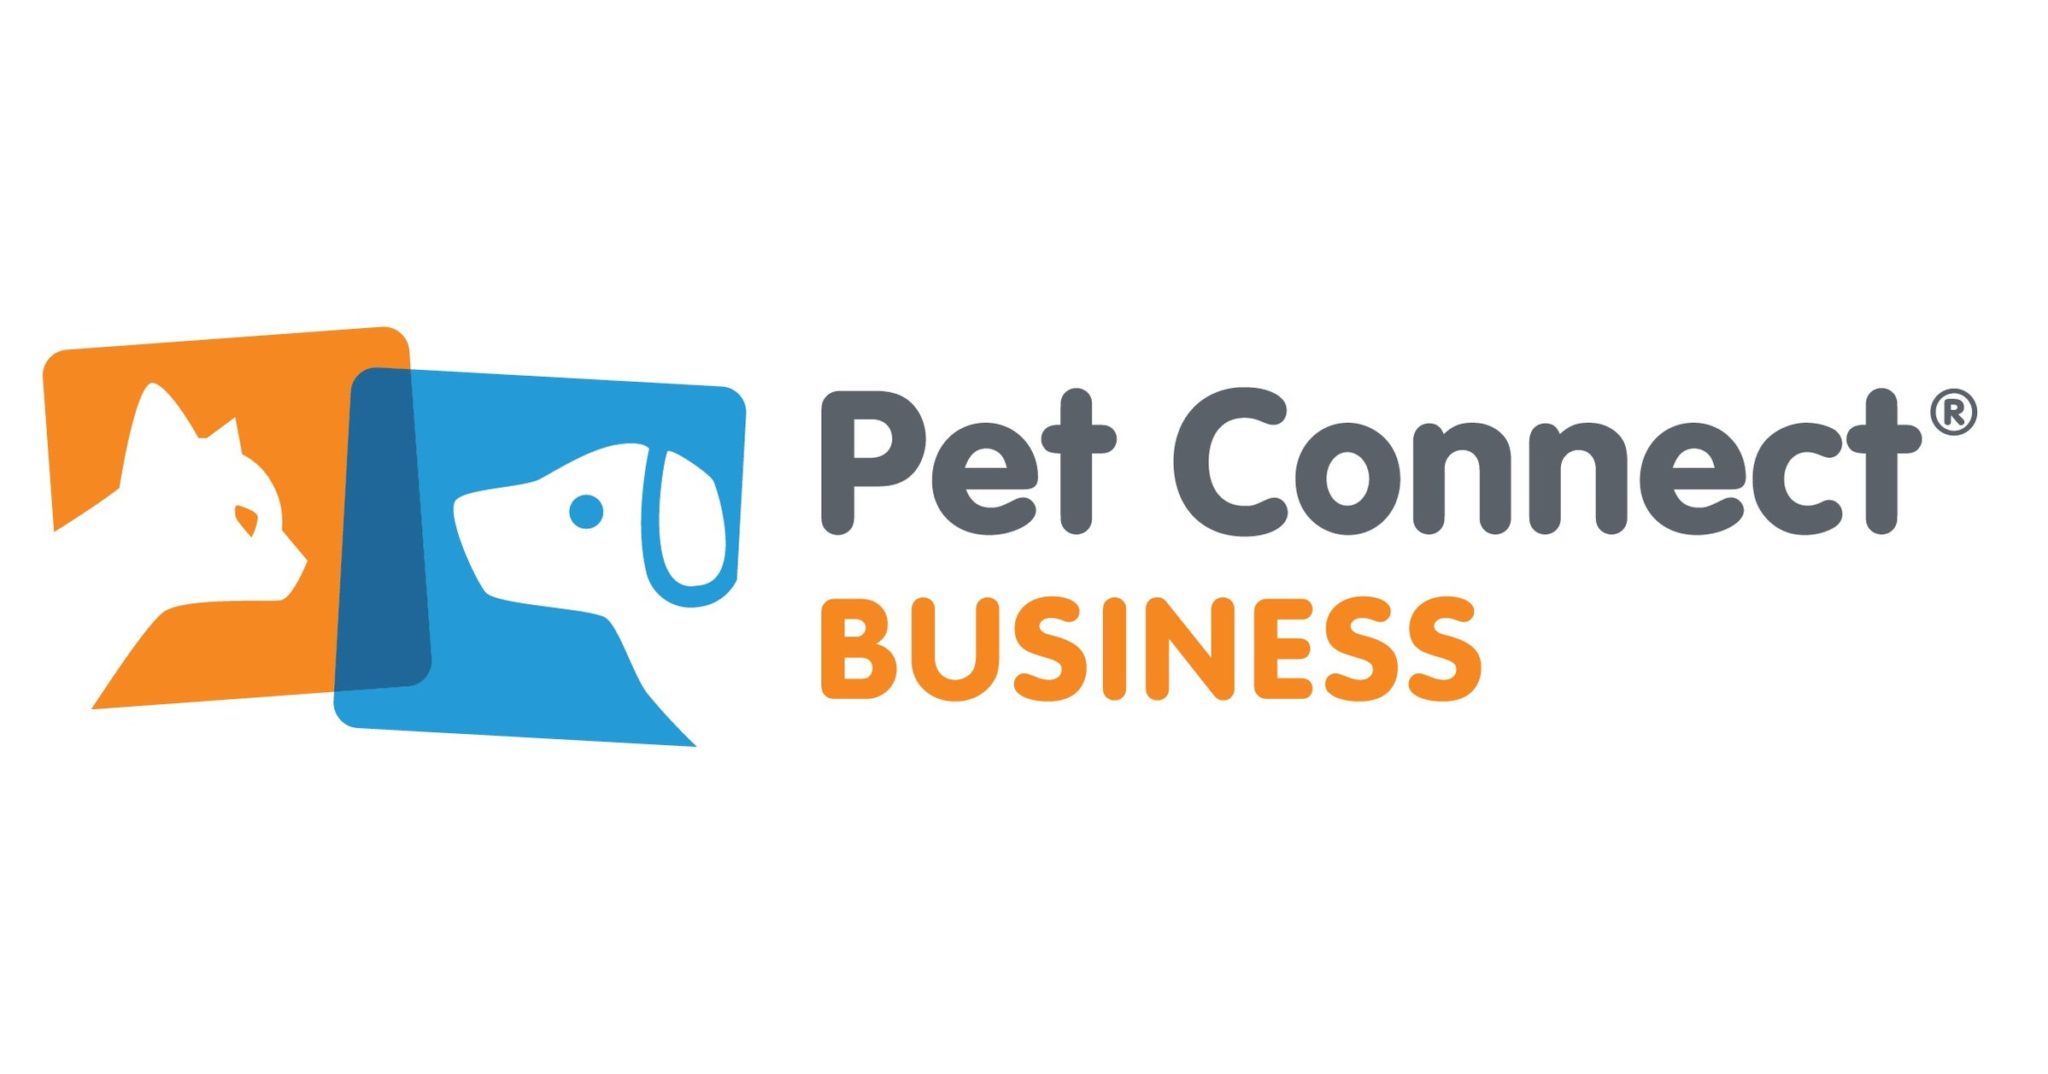 Pet Connect Business